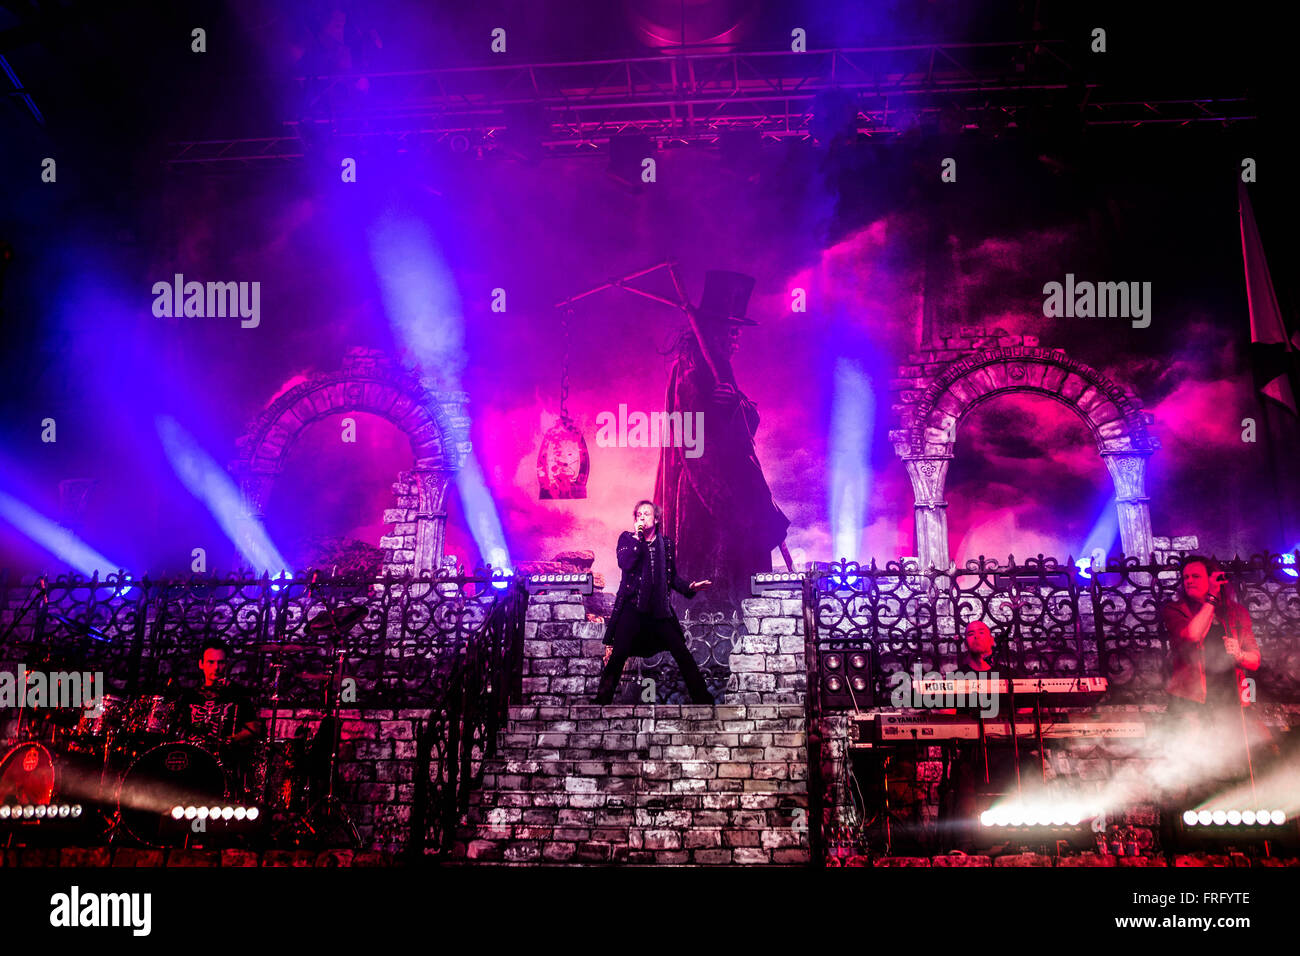 Milano, Italia. 22 mar, 2016. band power metal avantasia suona dal vivo all'Alcatraz a milano, Italia il 22 marzo 2016 credit: mairo cinquetti/alamy live news Foto Stock